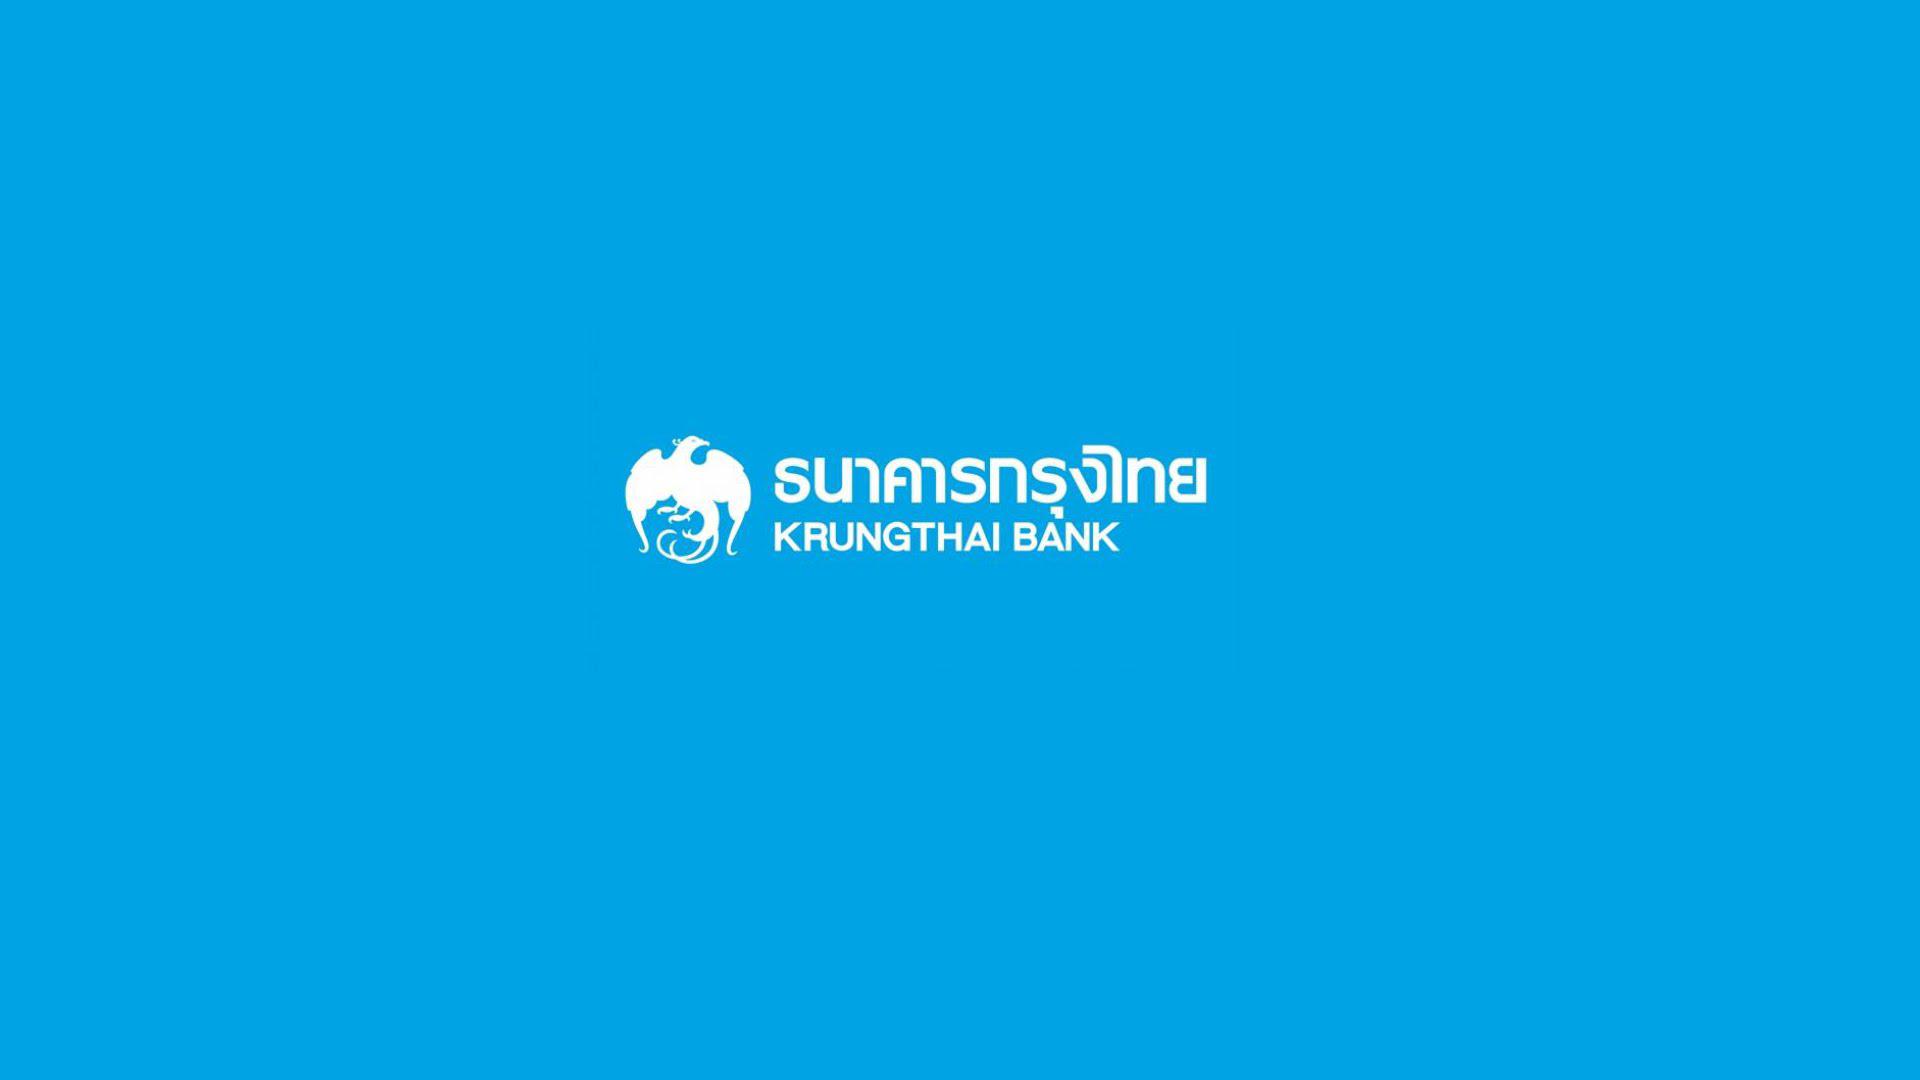 รูปบทความ ธ.กรุงไทยยกทรัพย์มือสอง บ้าน คอนโด ทาวน์เฮ้าส์ มาเปิดประมูลกว่า 50 รายการ